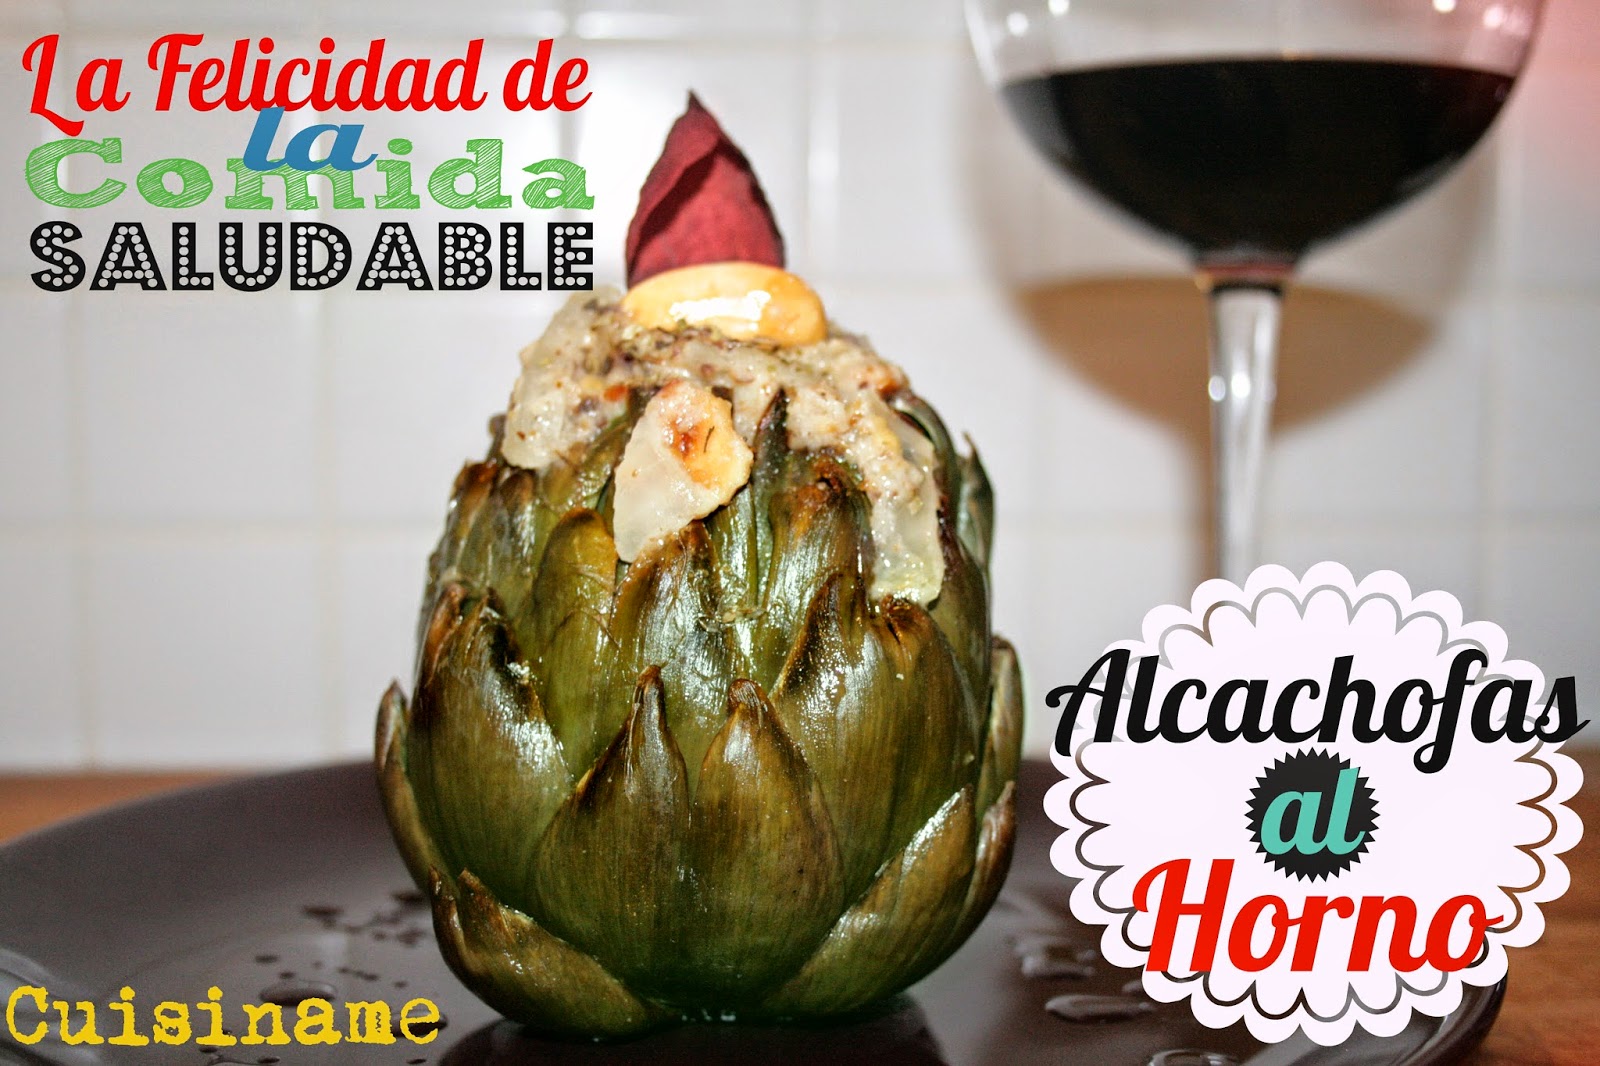 alcachofas, recetas sanas, recetas originales, verduras, almendras, avellanas, alcachofas al horno, recetas de cocina, recetas fáciles, humor